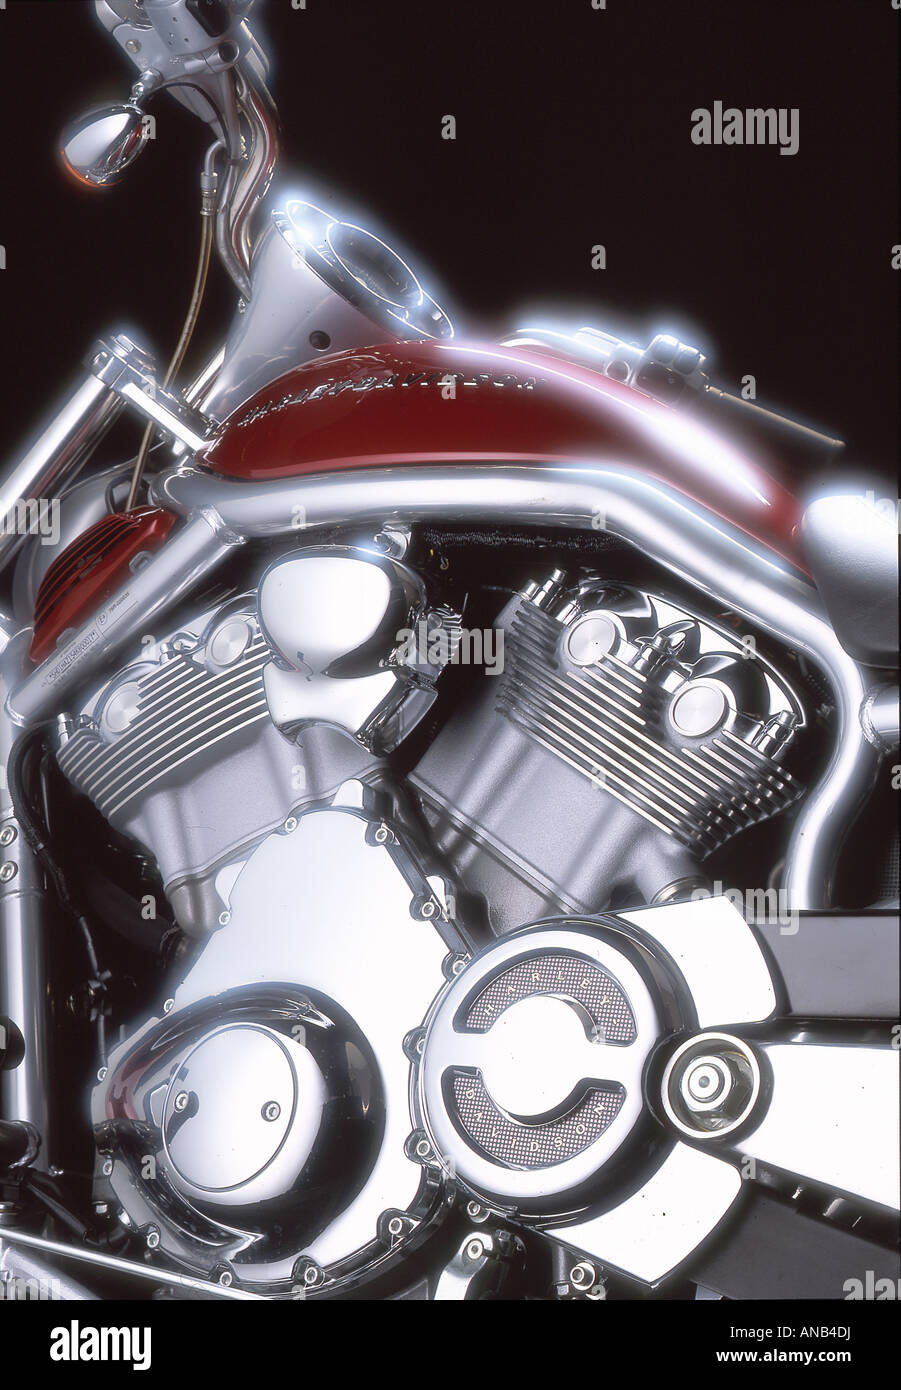 Motocicleta Harley Davison Foto de stock